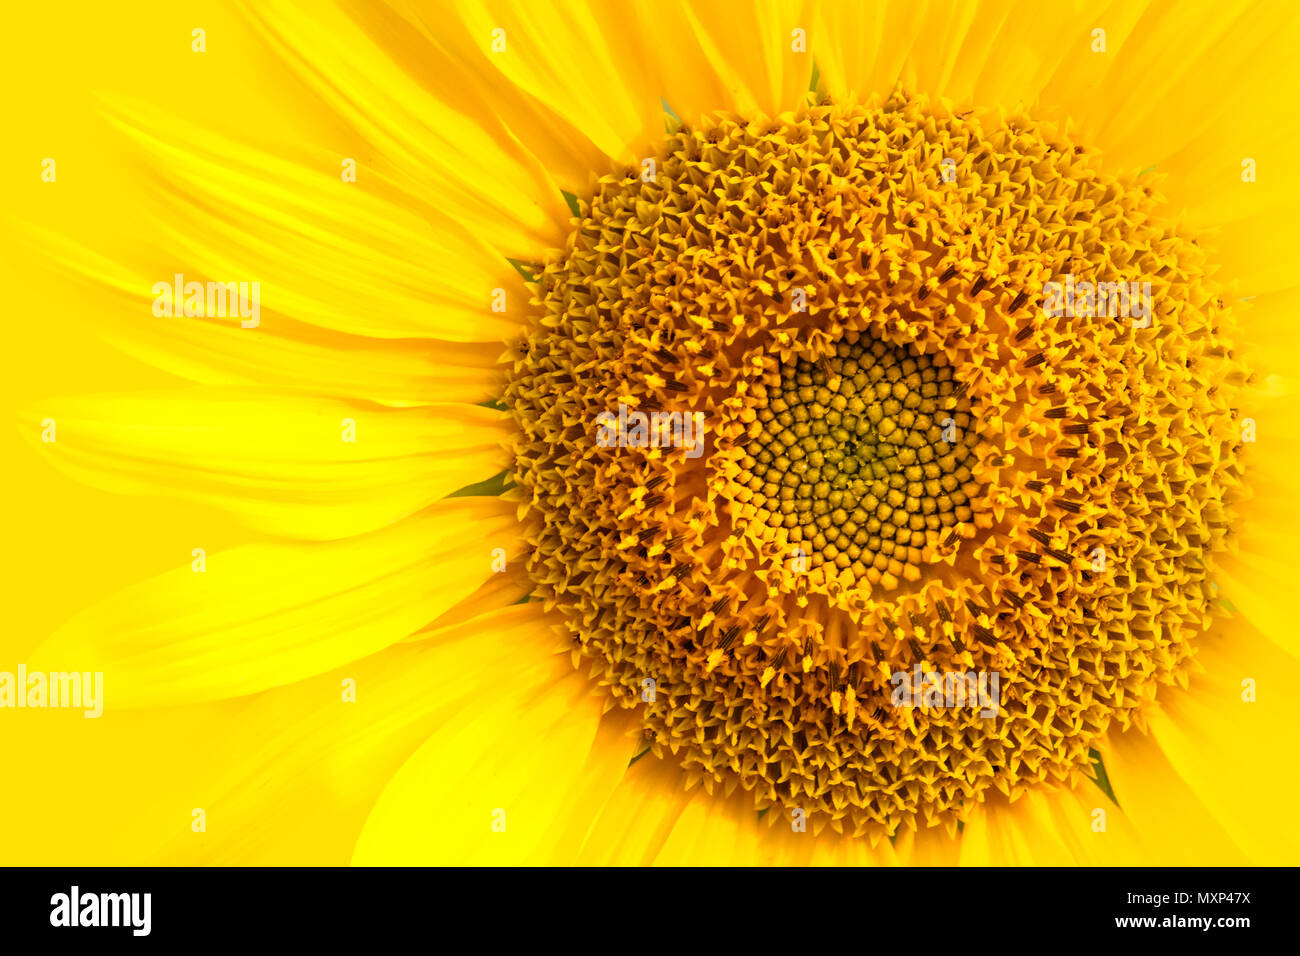 Sonnenblume close-up Details der Sonnenblumen- und Ray mit winzigen disk Blumen gegen gelbe Hintergrund Makro Foto. Konzept für Sommer, Sonne, su Stockfoto